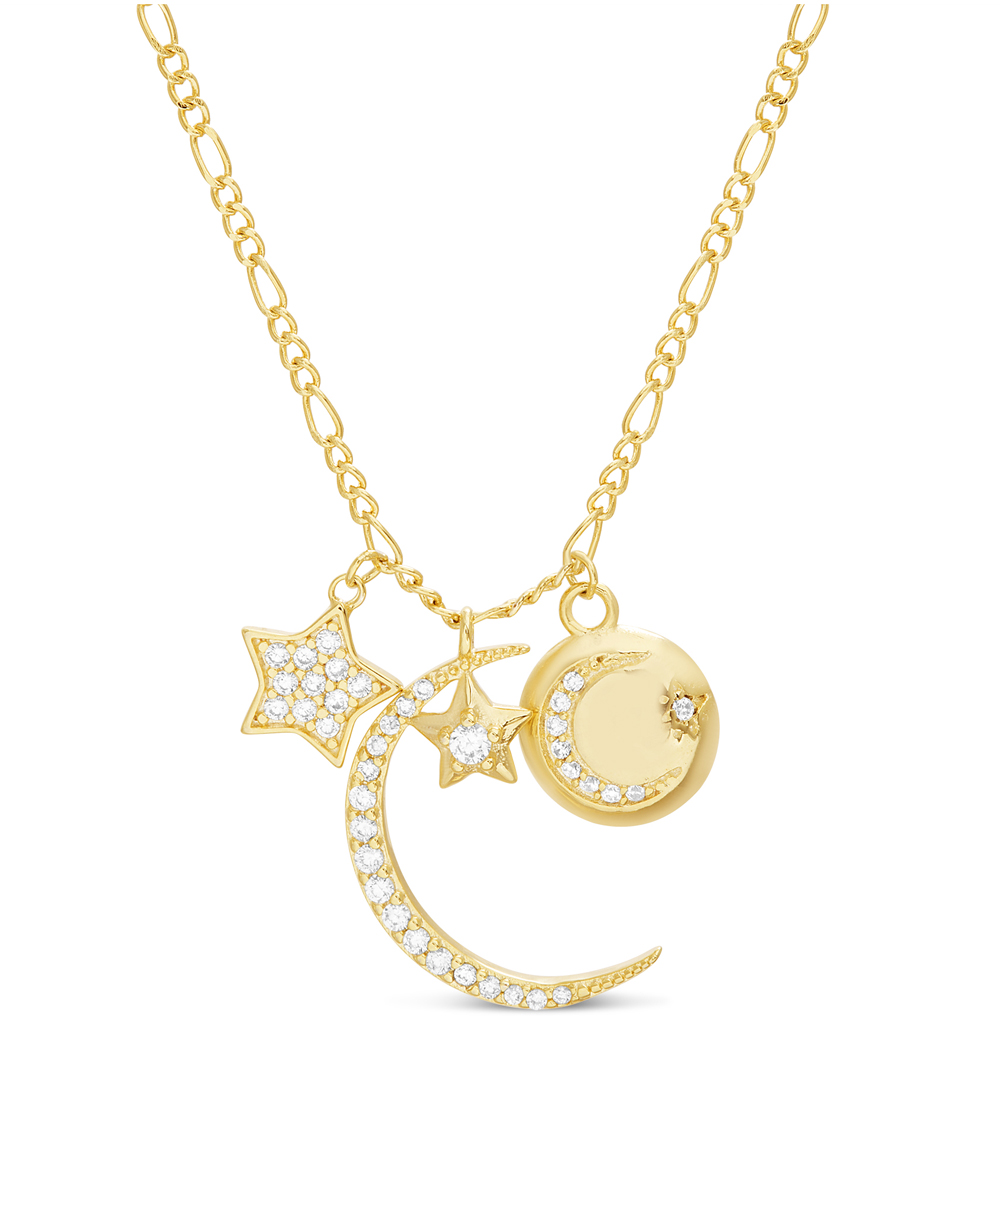 Conjunto Luna, estrellas, medalla con lunita, piedras blancas. amarillo